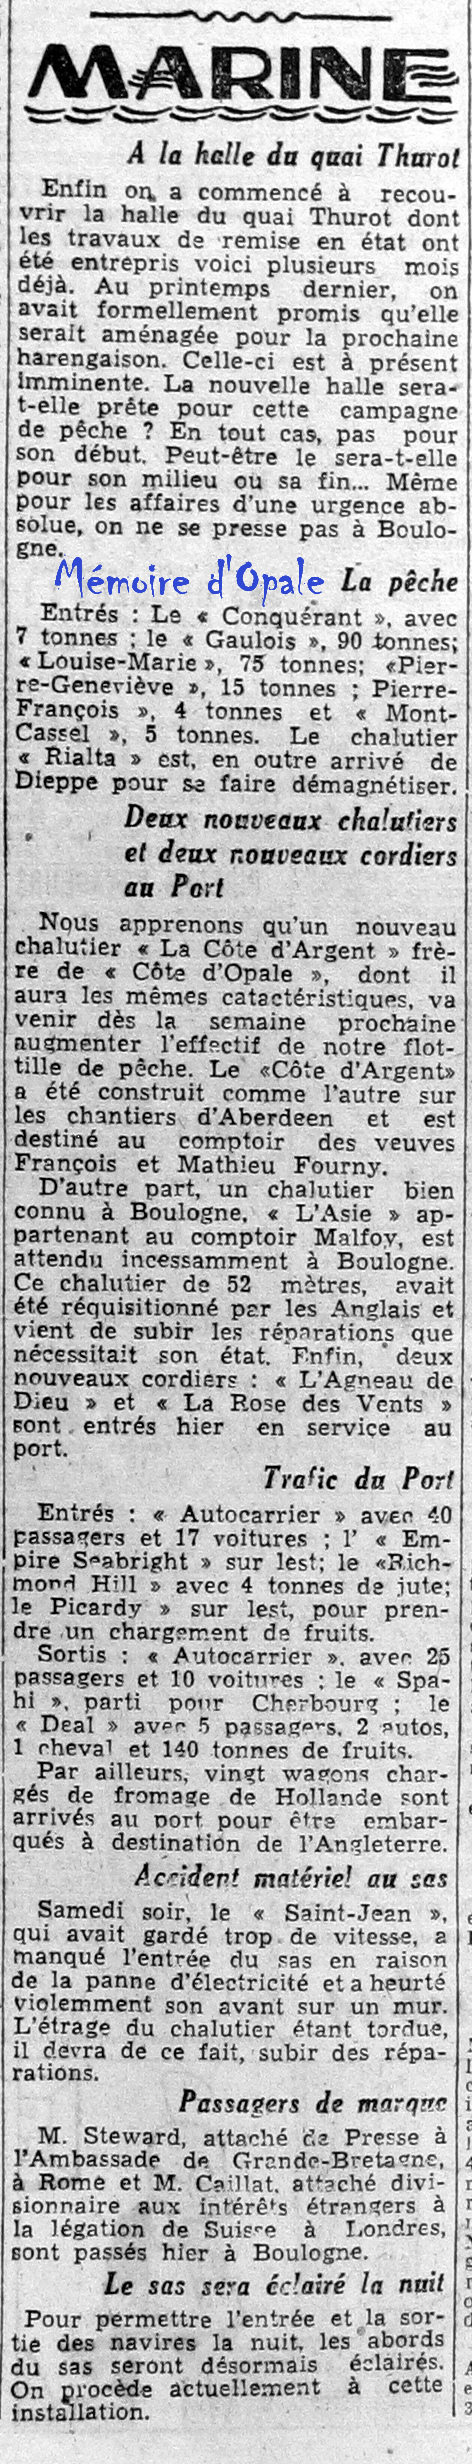 La Voix du Nord – 1946 – Photos Alain ÉVRARD pour Mémoire d’Opale - Page 37 La_v1431